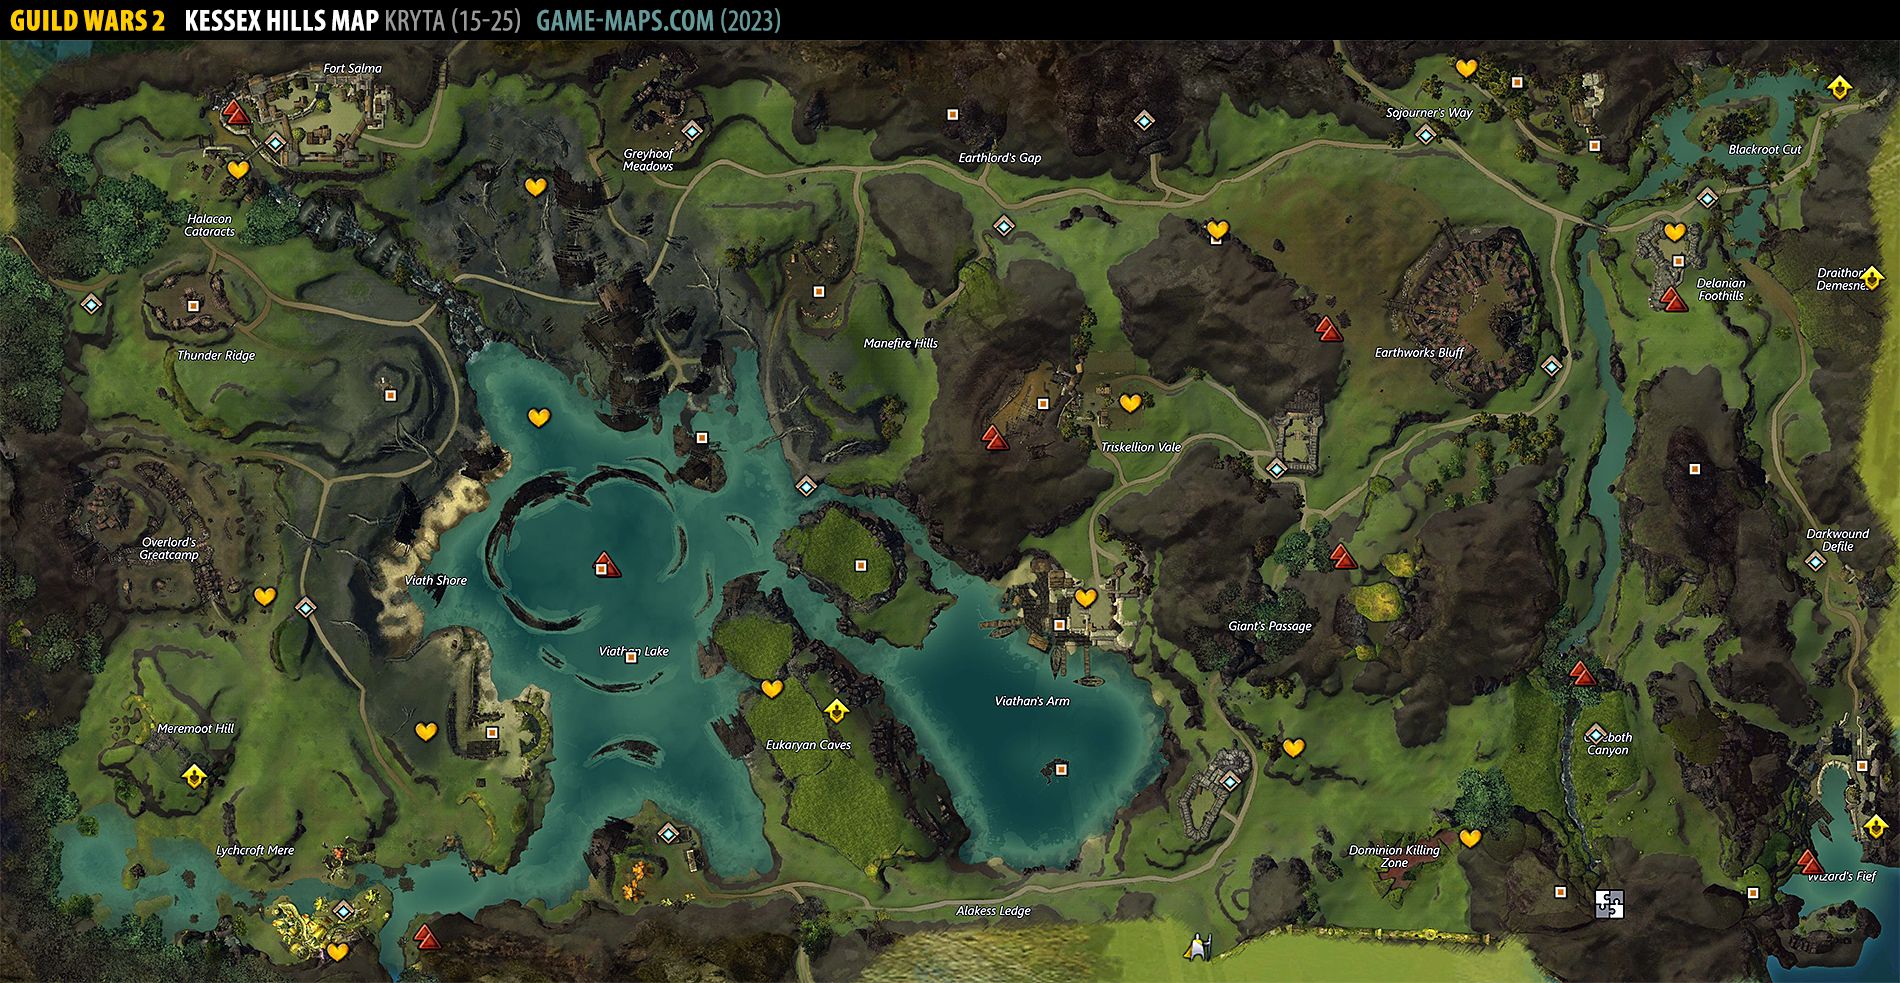 Kessex Hills Map for Guild Wars 2 (2019)